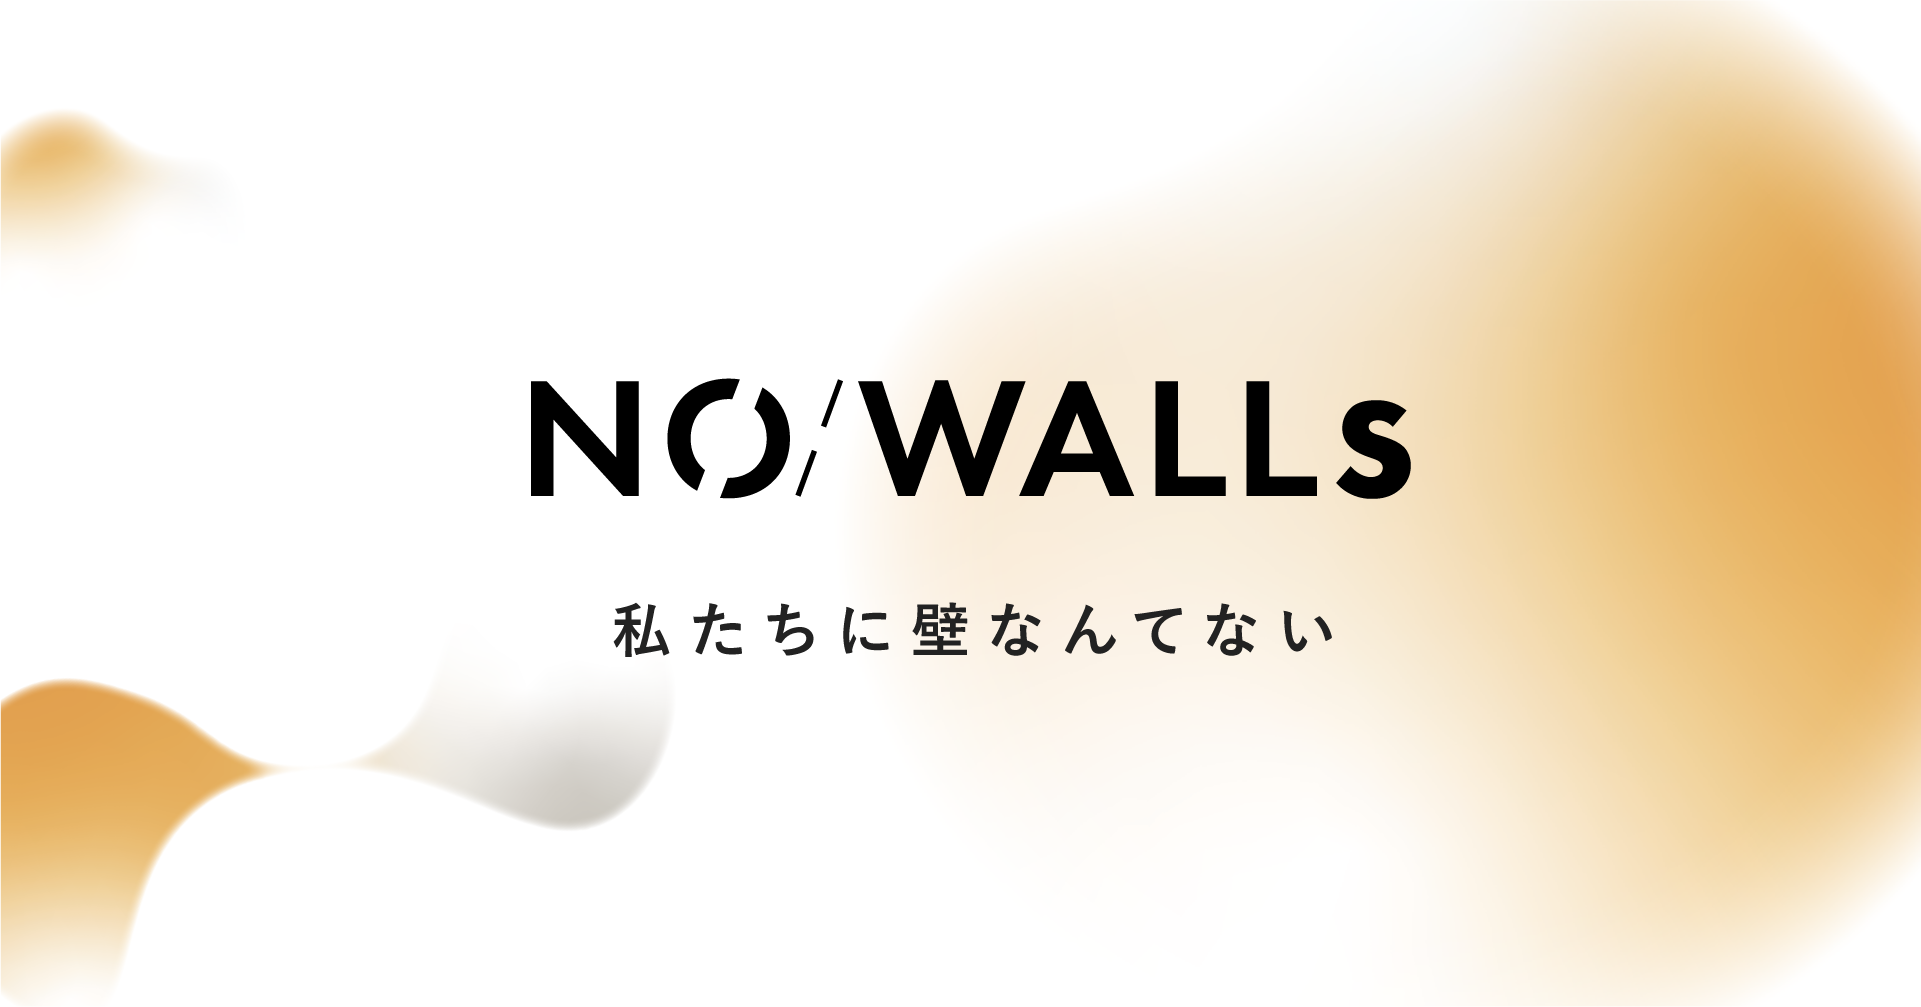 ビジョンコミュニティクリエイター 高橋奎が コミュニティカンパニーno Walls Inc を登記しました No Walls 株式会社のプレスリリース